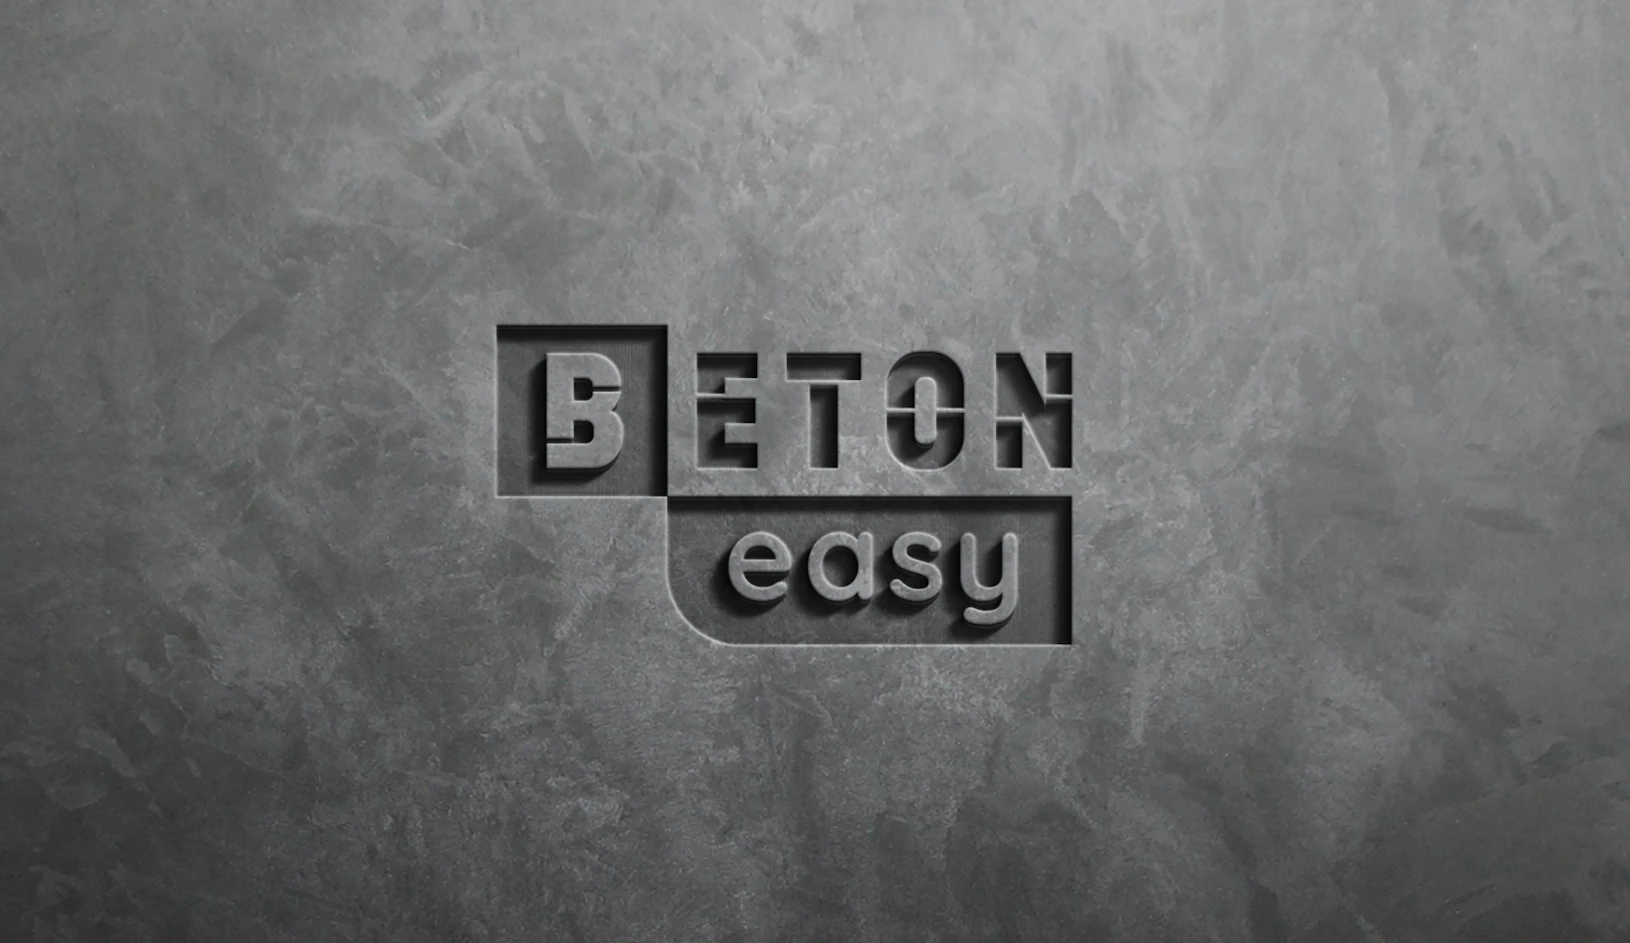 Béton easy - Bannière logotype dans le béton